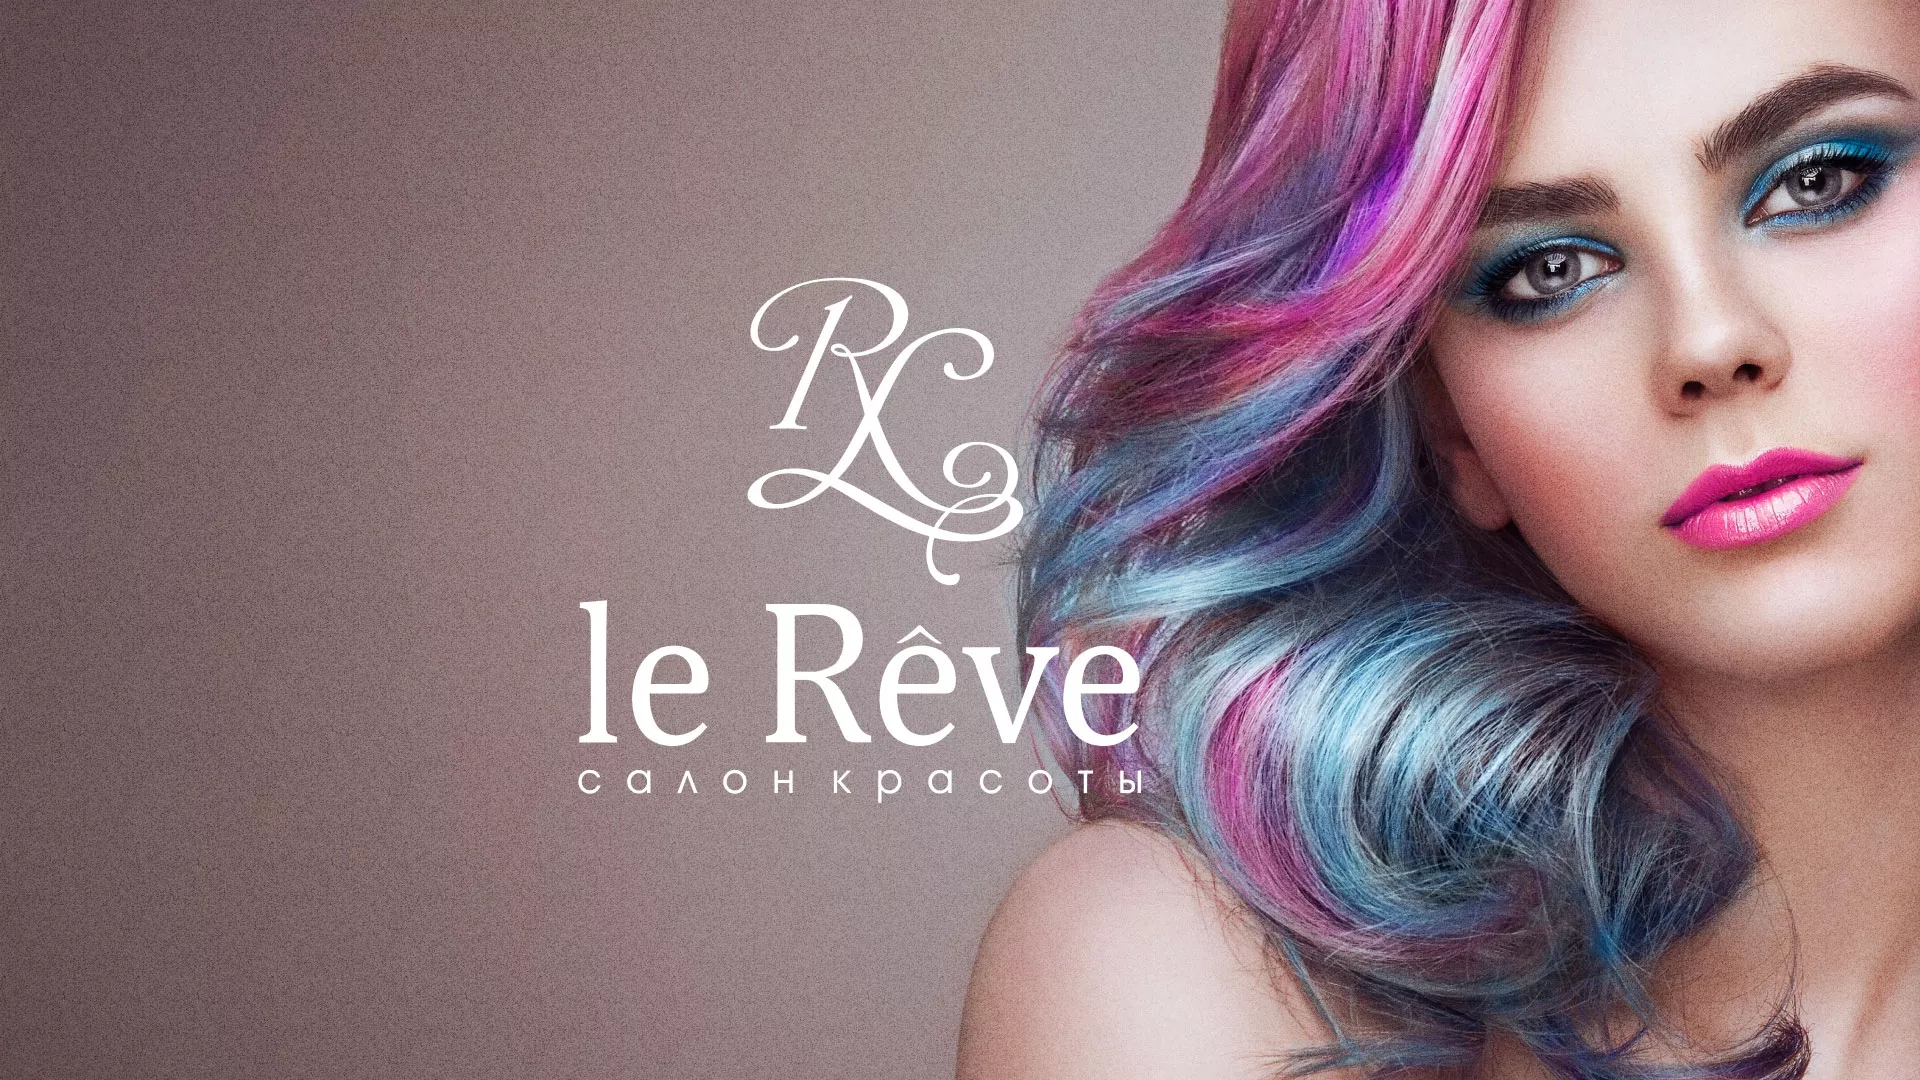 Создание сайта для салона красоты «Le Reve» в Кстово